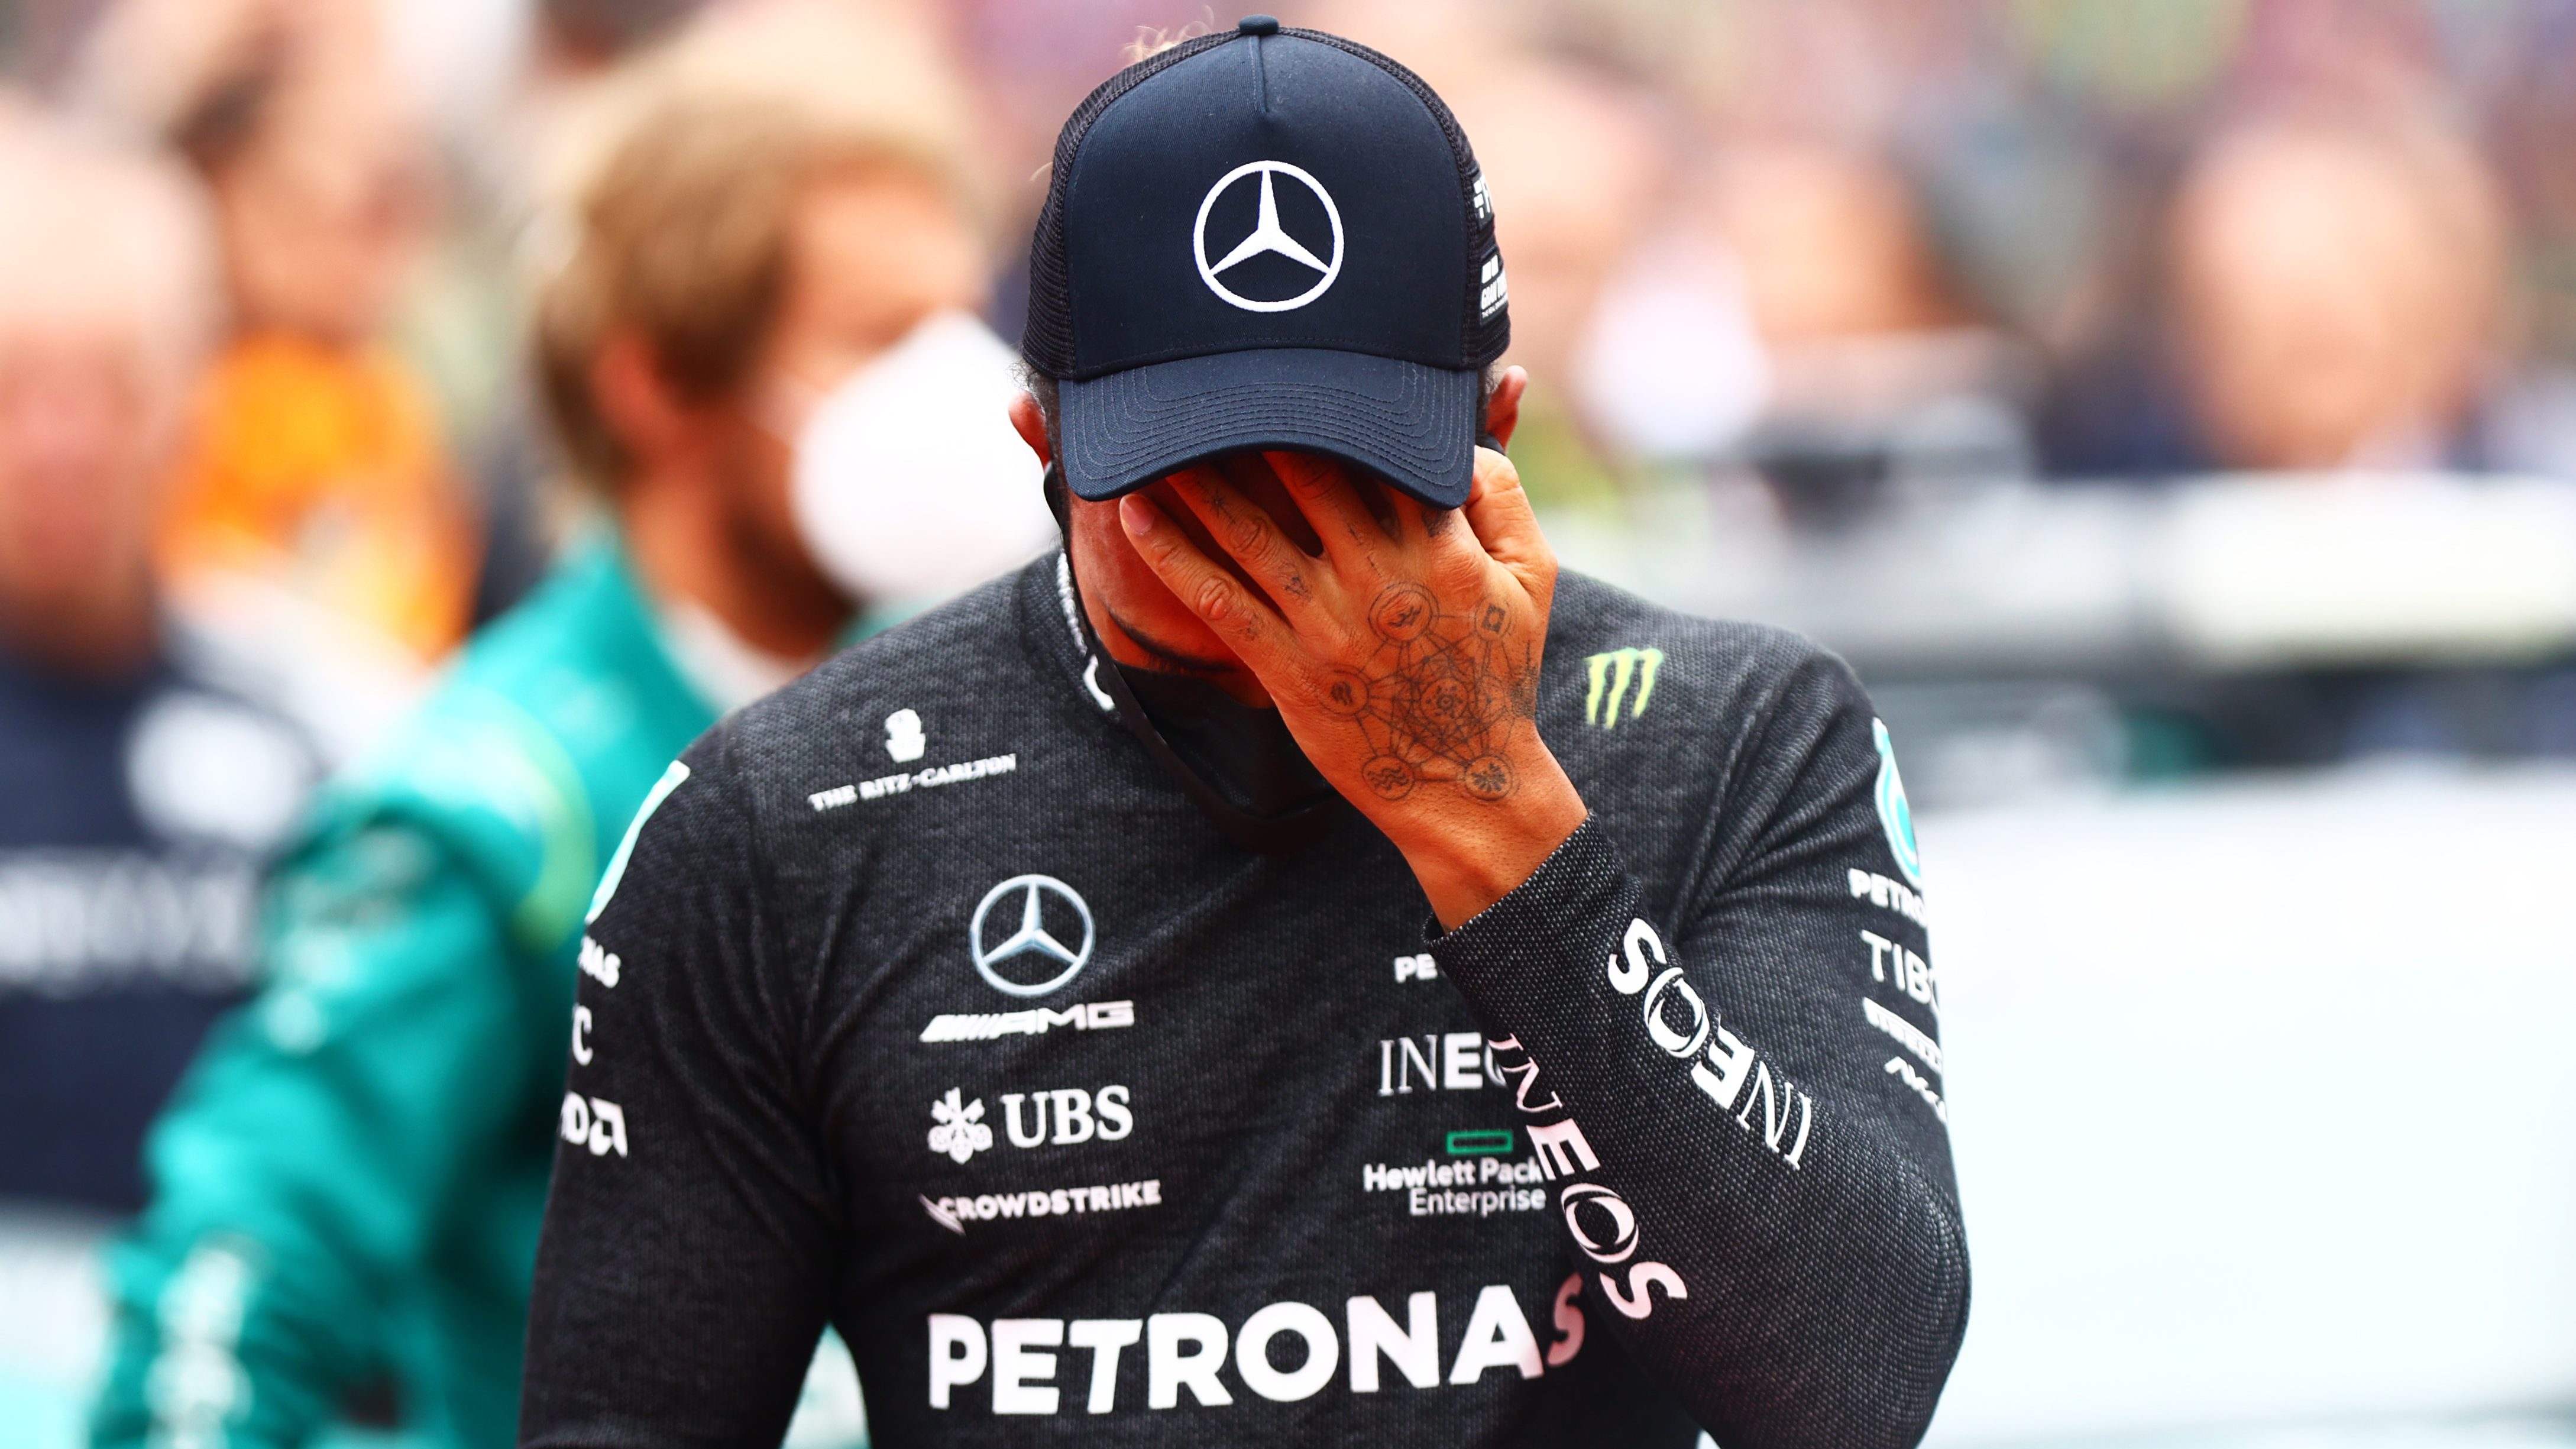 A Mercedes csapatfőnöke bocsánatot kért Hamiltontól a vezethetetlen autóért